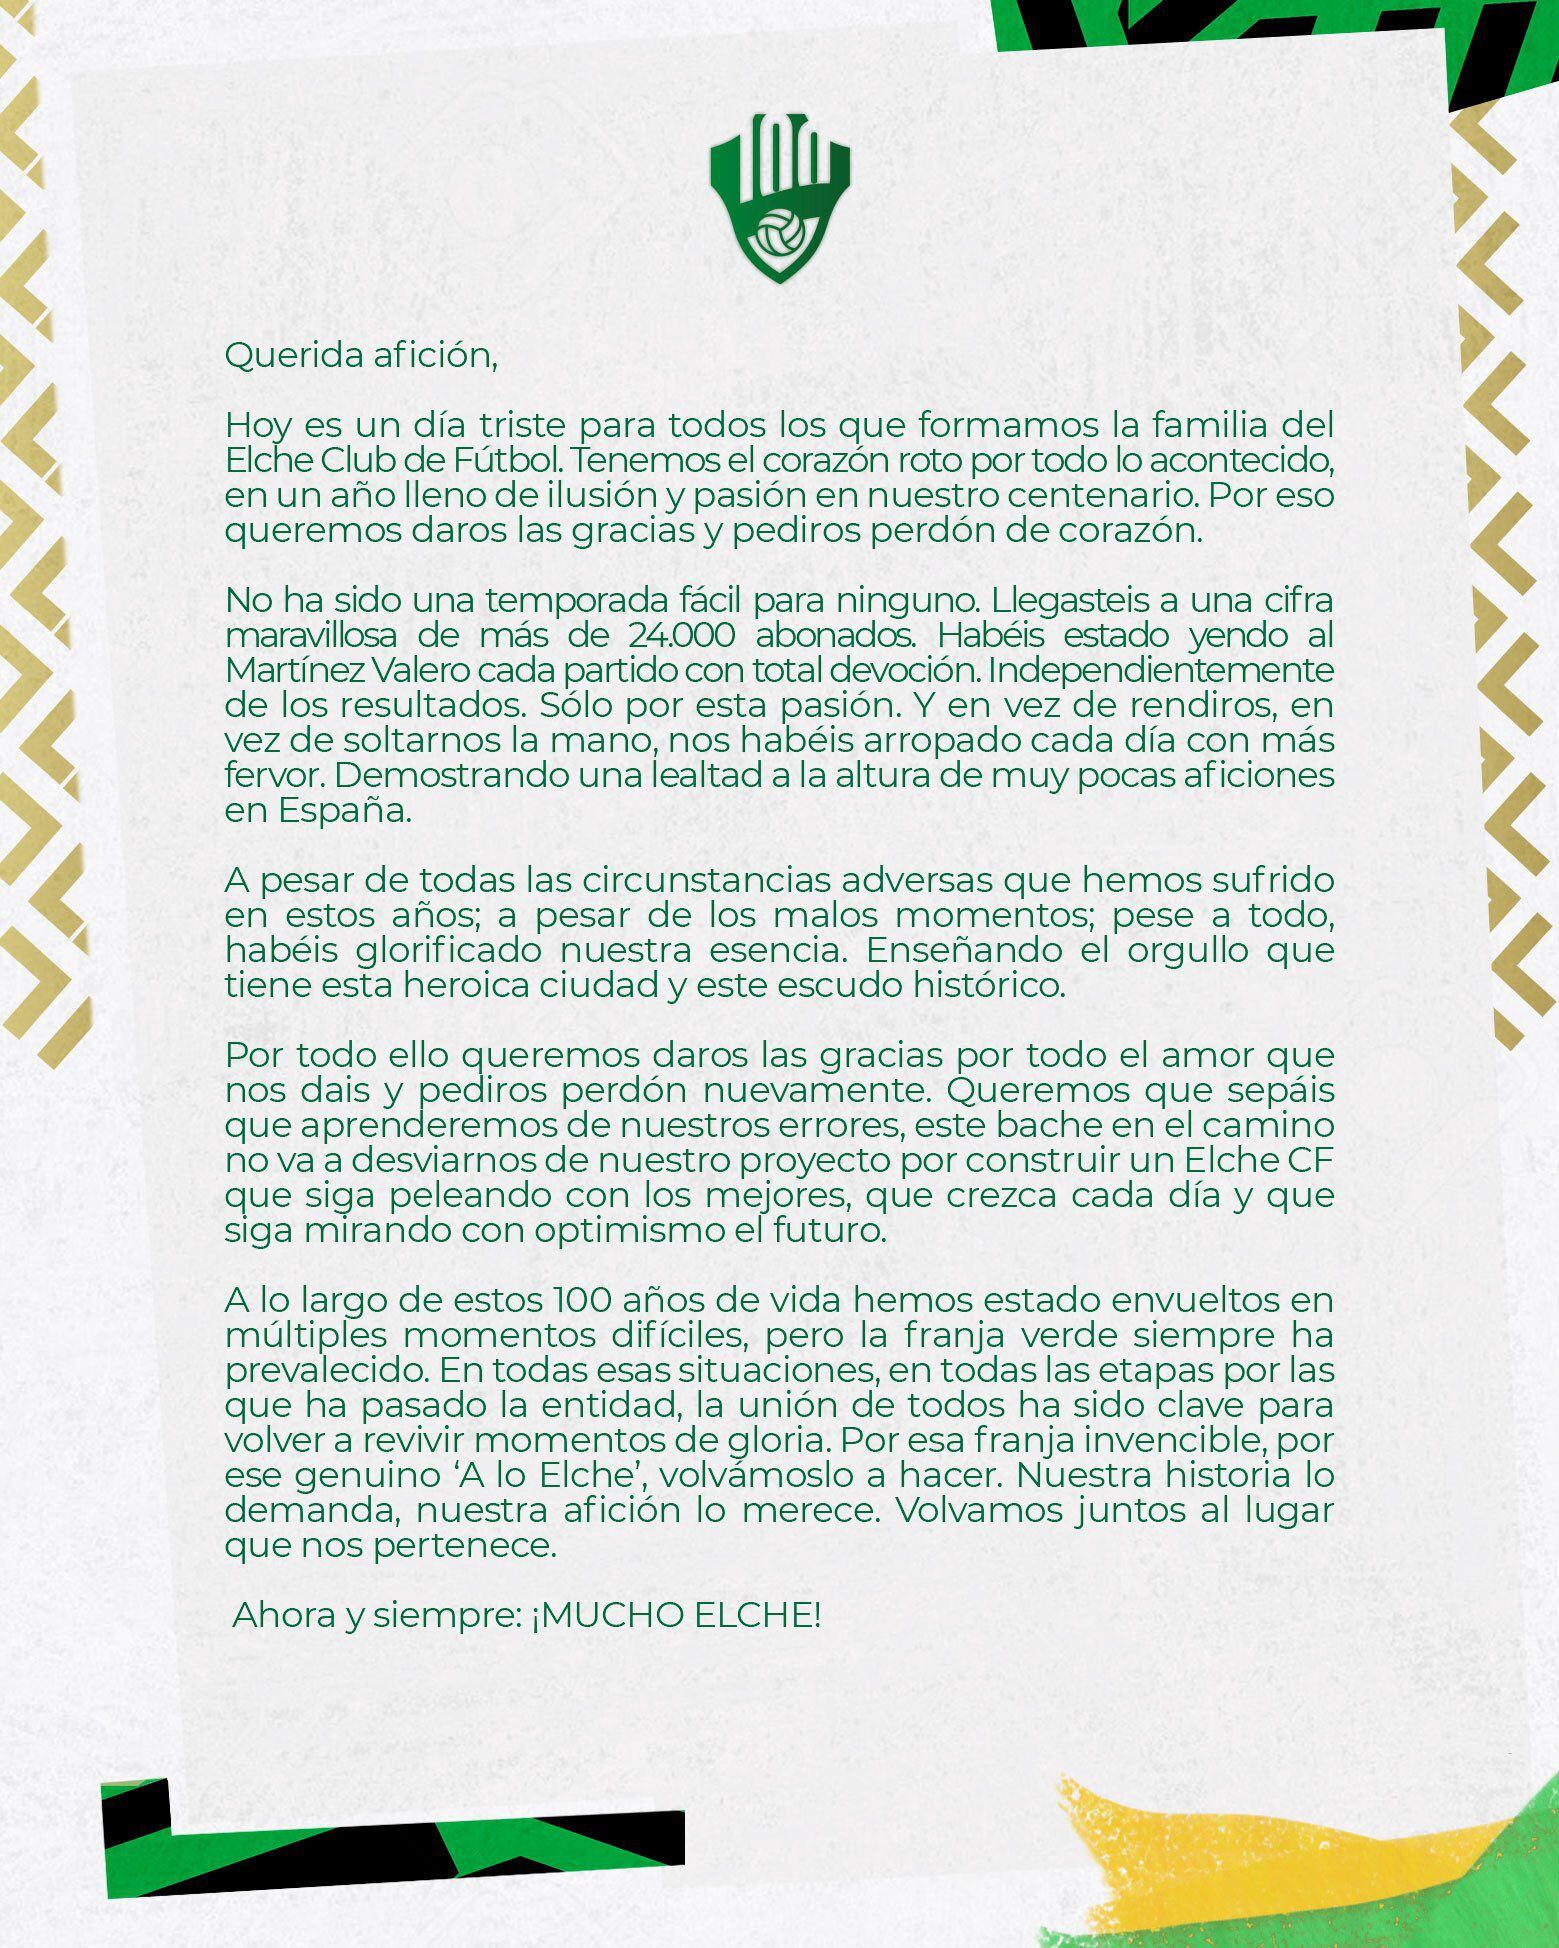 La carta que publicó el Elche tras consumarse su descenso a la Segunda División de España